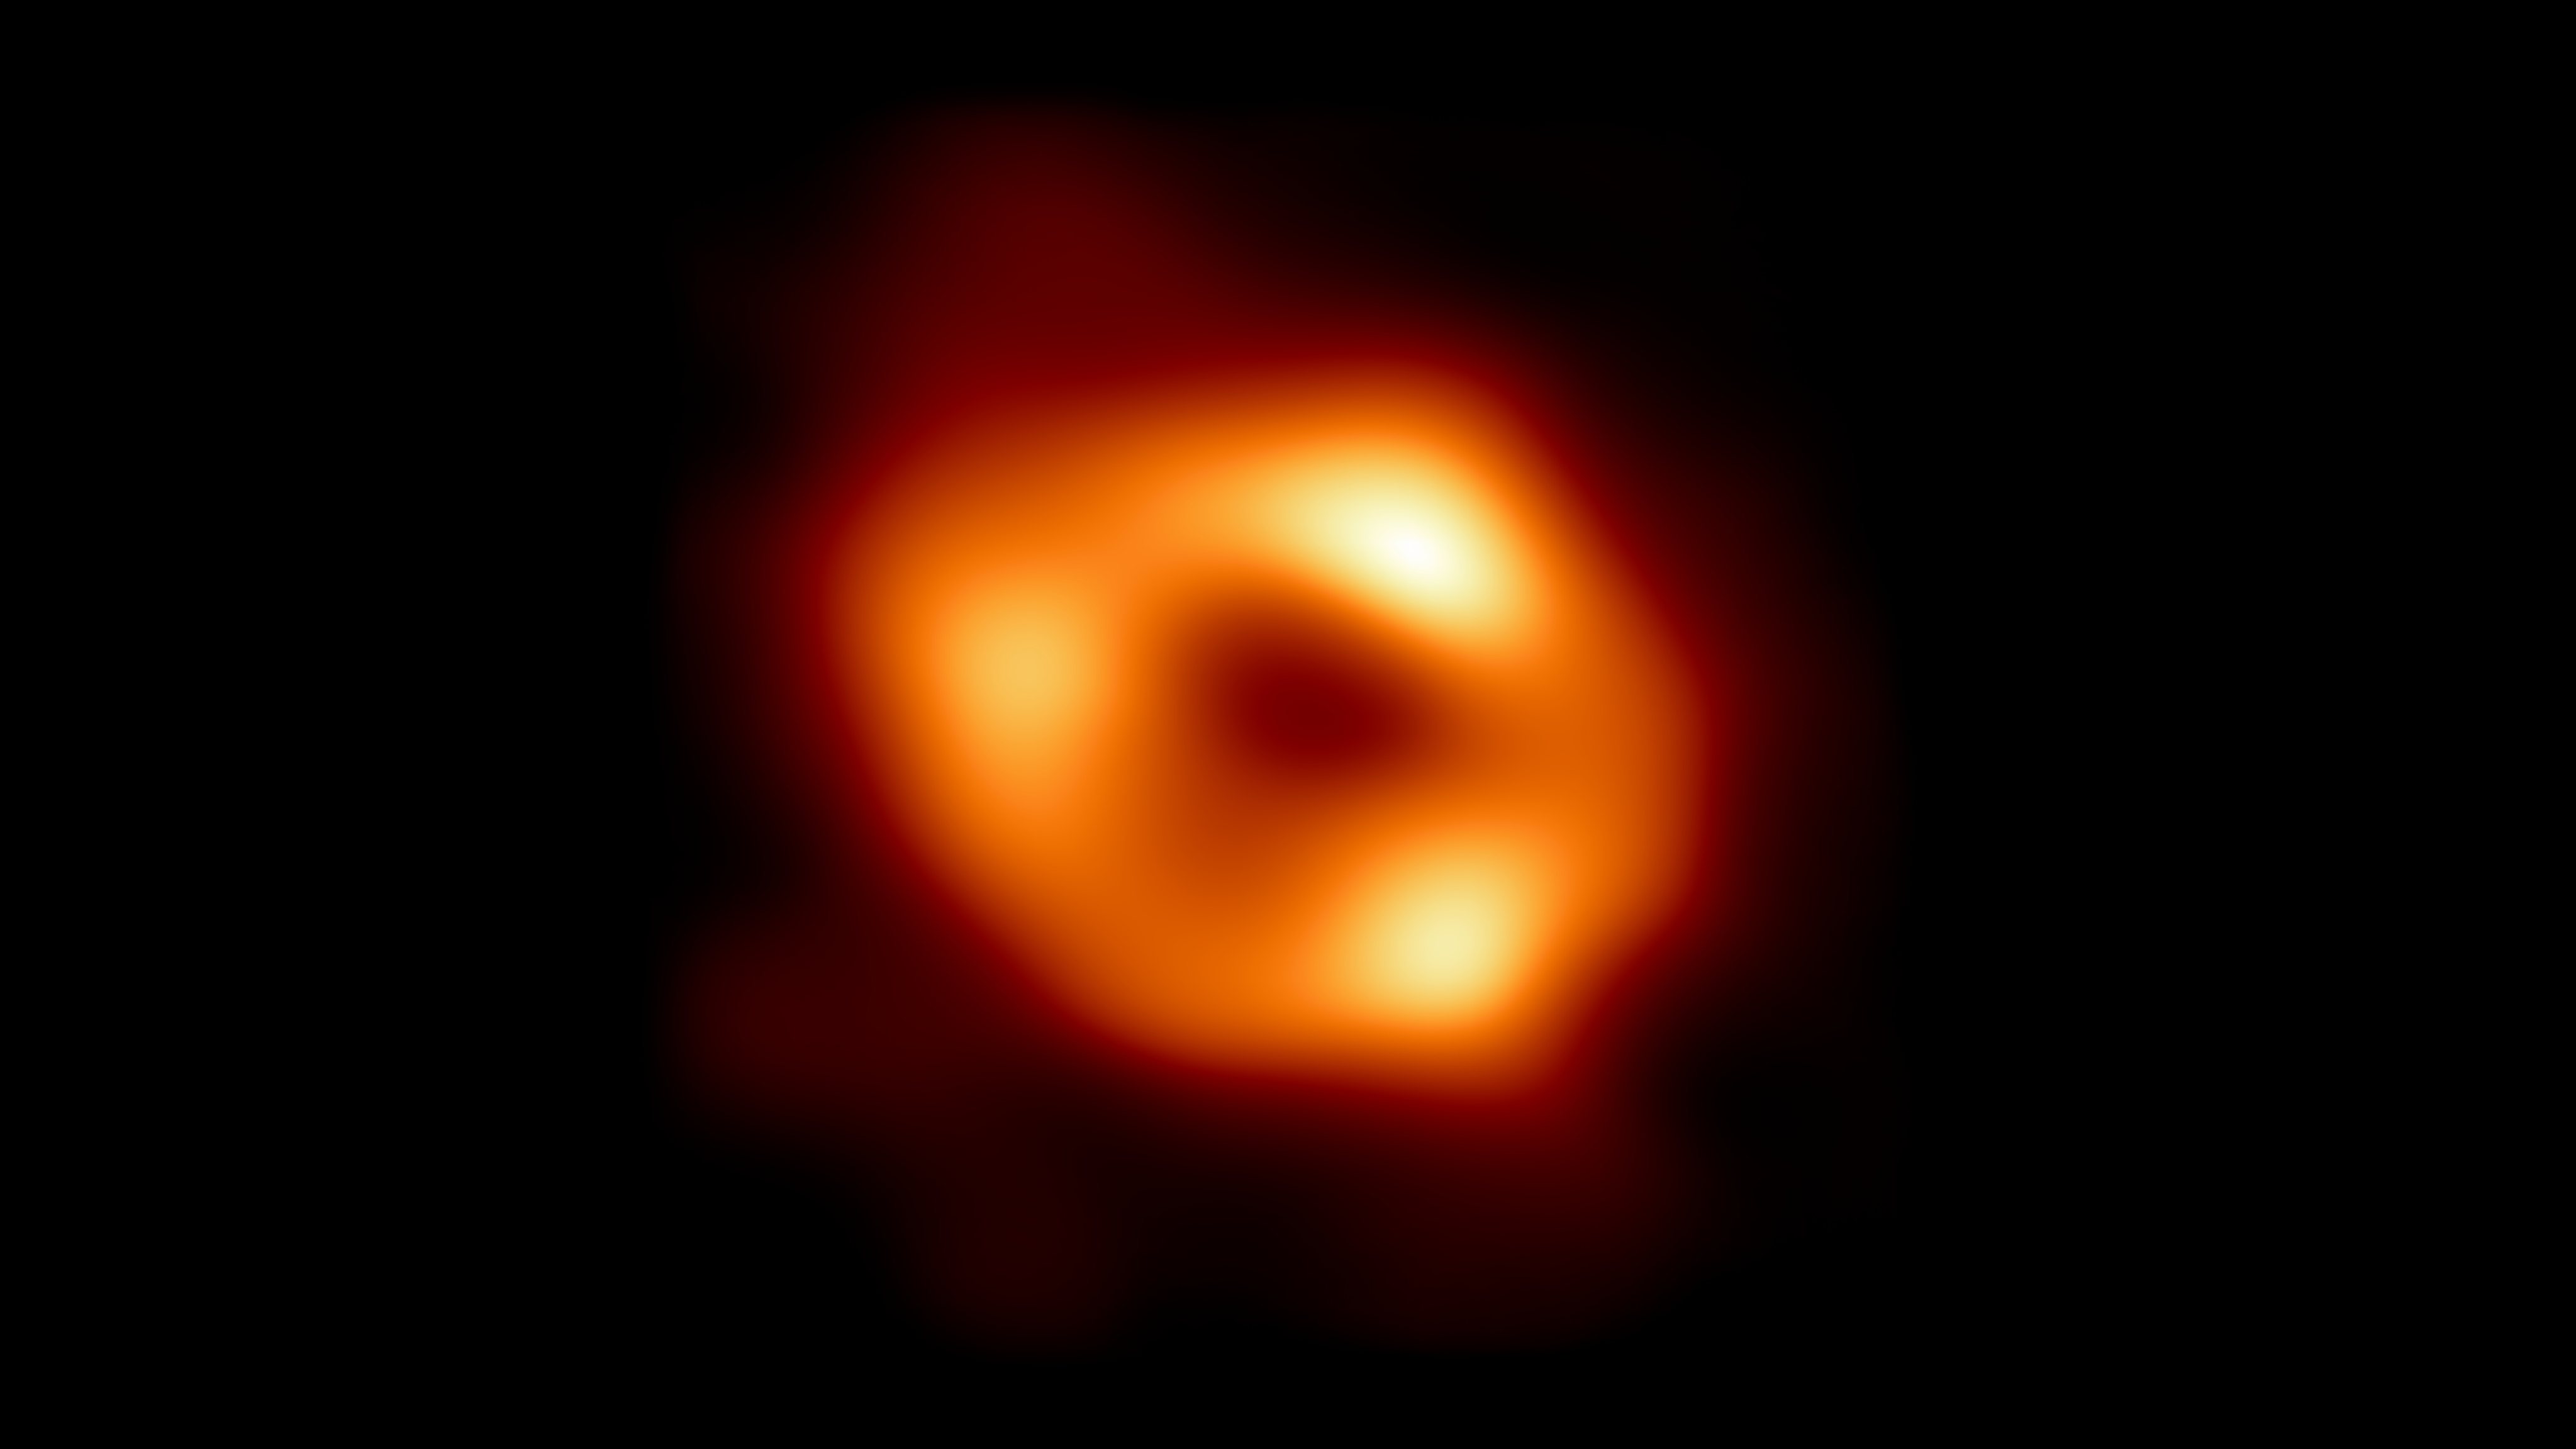 A imagem revela a silhueta do buraco negro quando o gás incandescente é engolido pela região central, a que se chama sombra